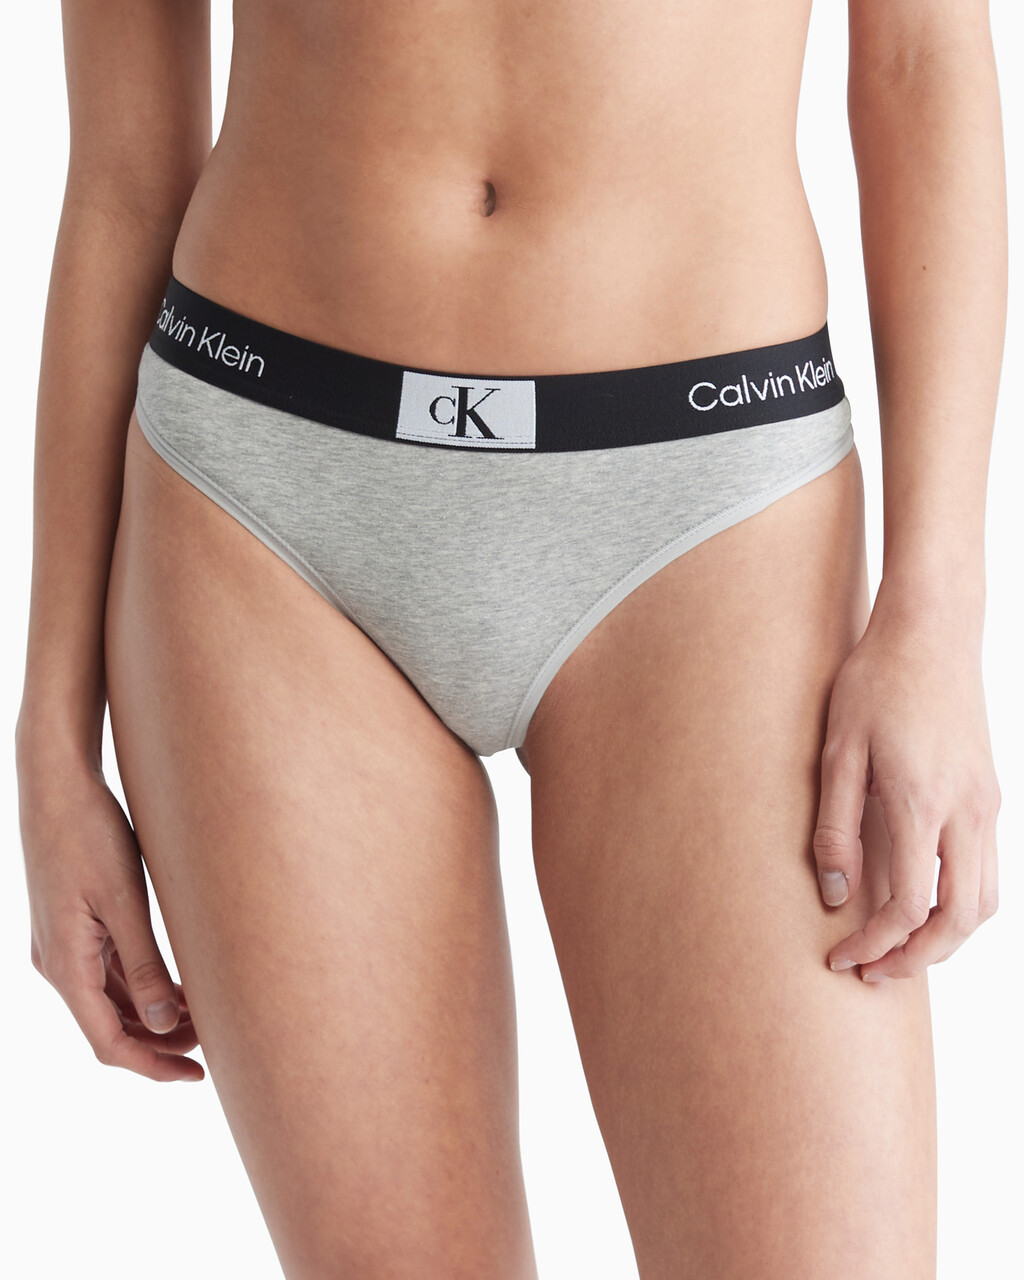 Grey Calvin Klein Underwear CK96 Modern Thong - JD Sports Global